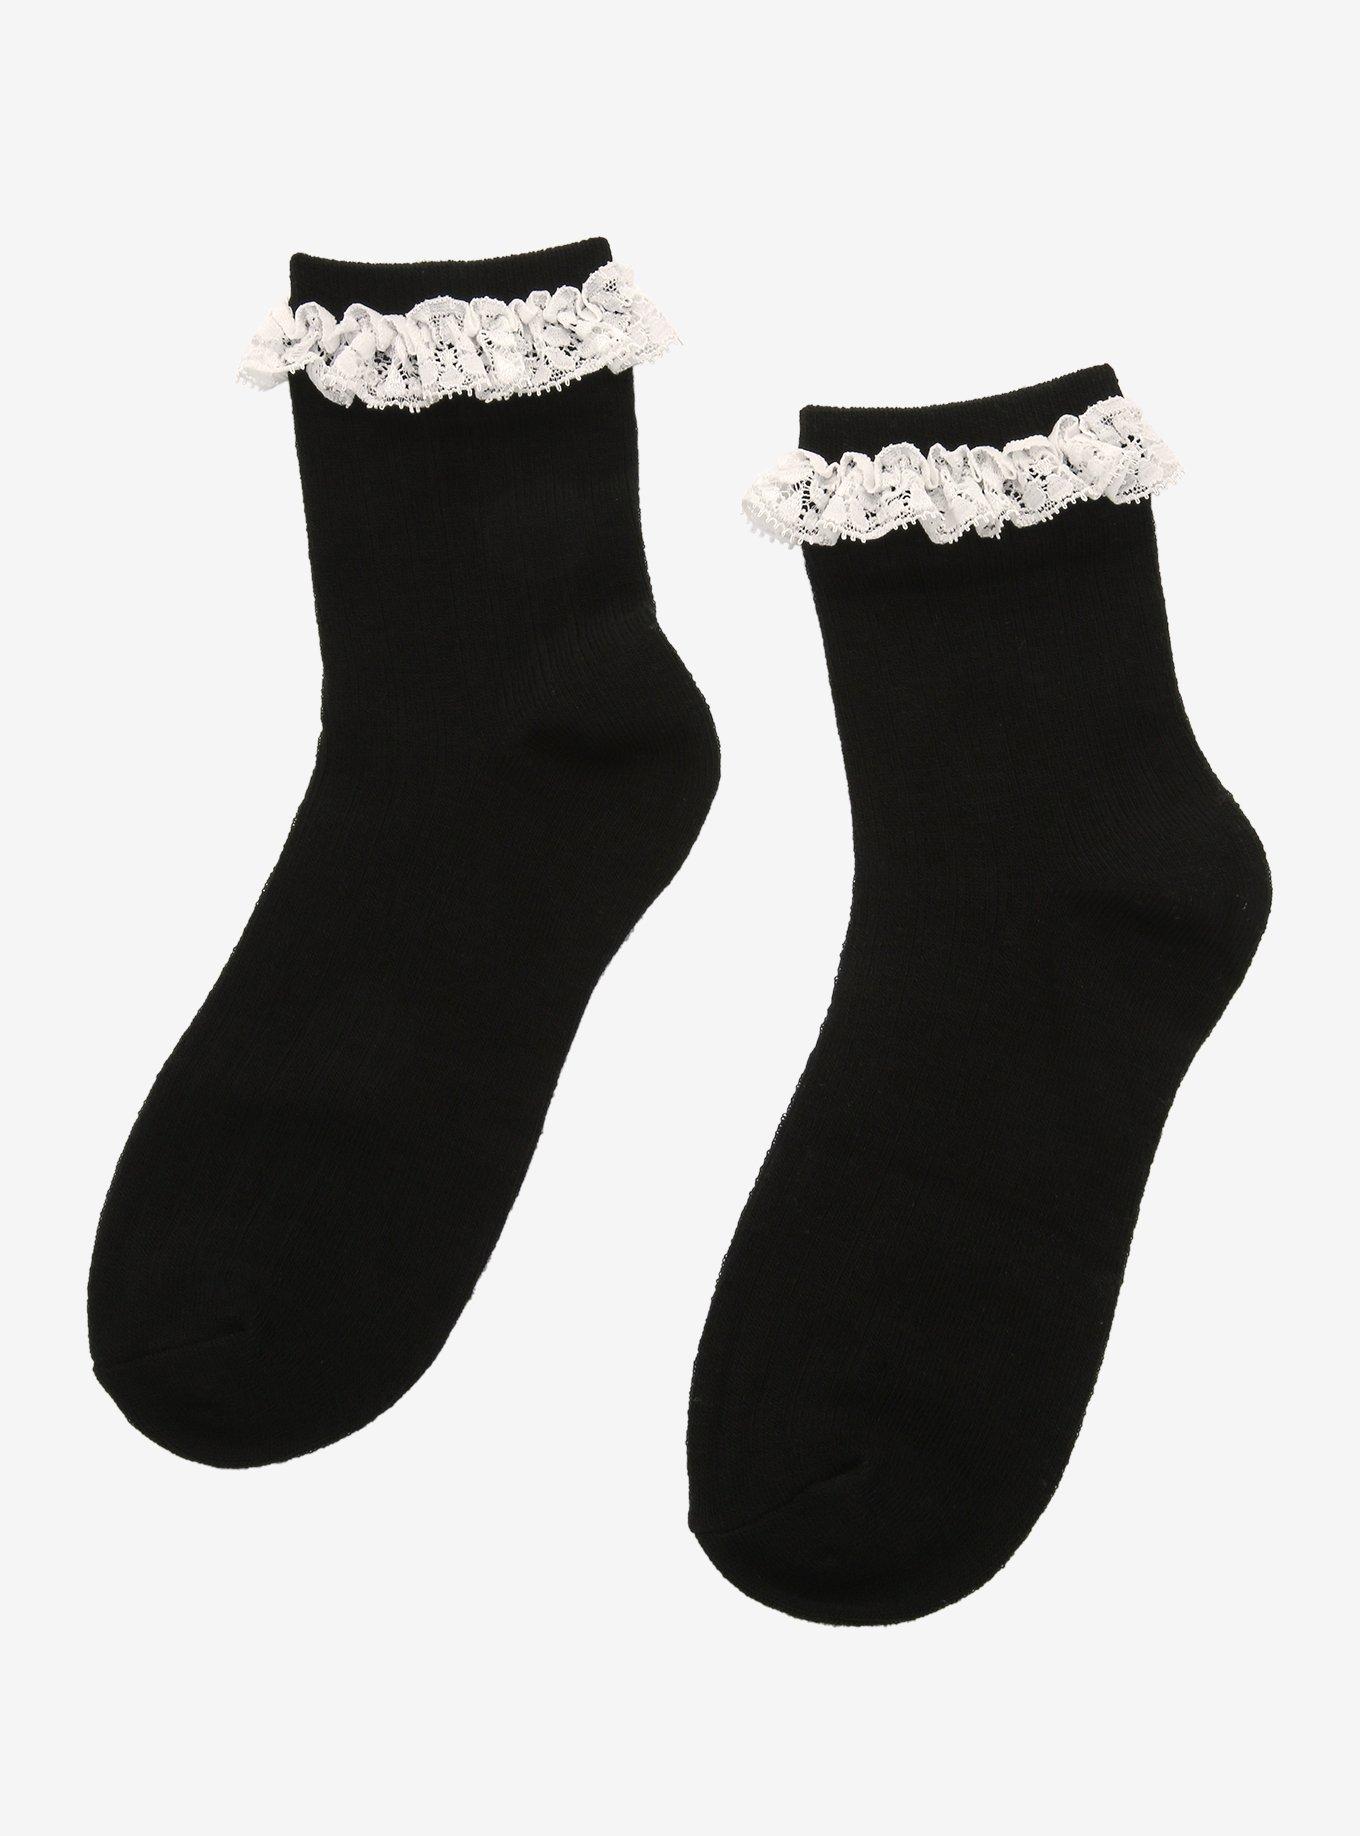 Black & White Lace Ankle Socks, , alternate